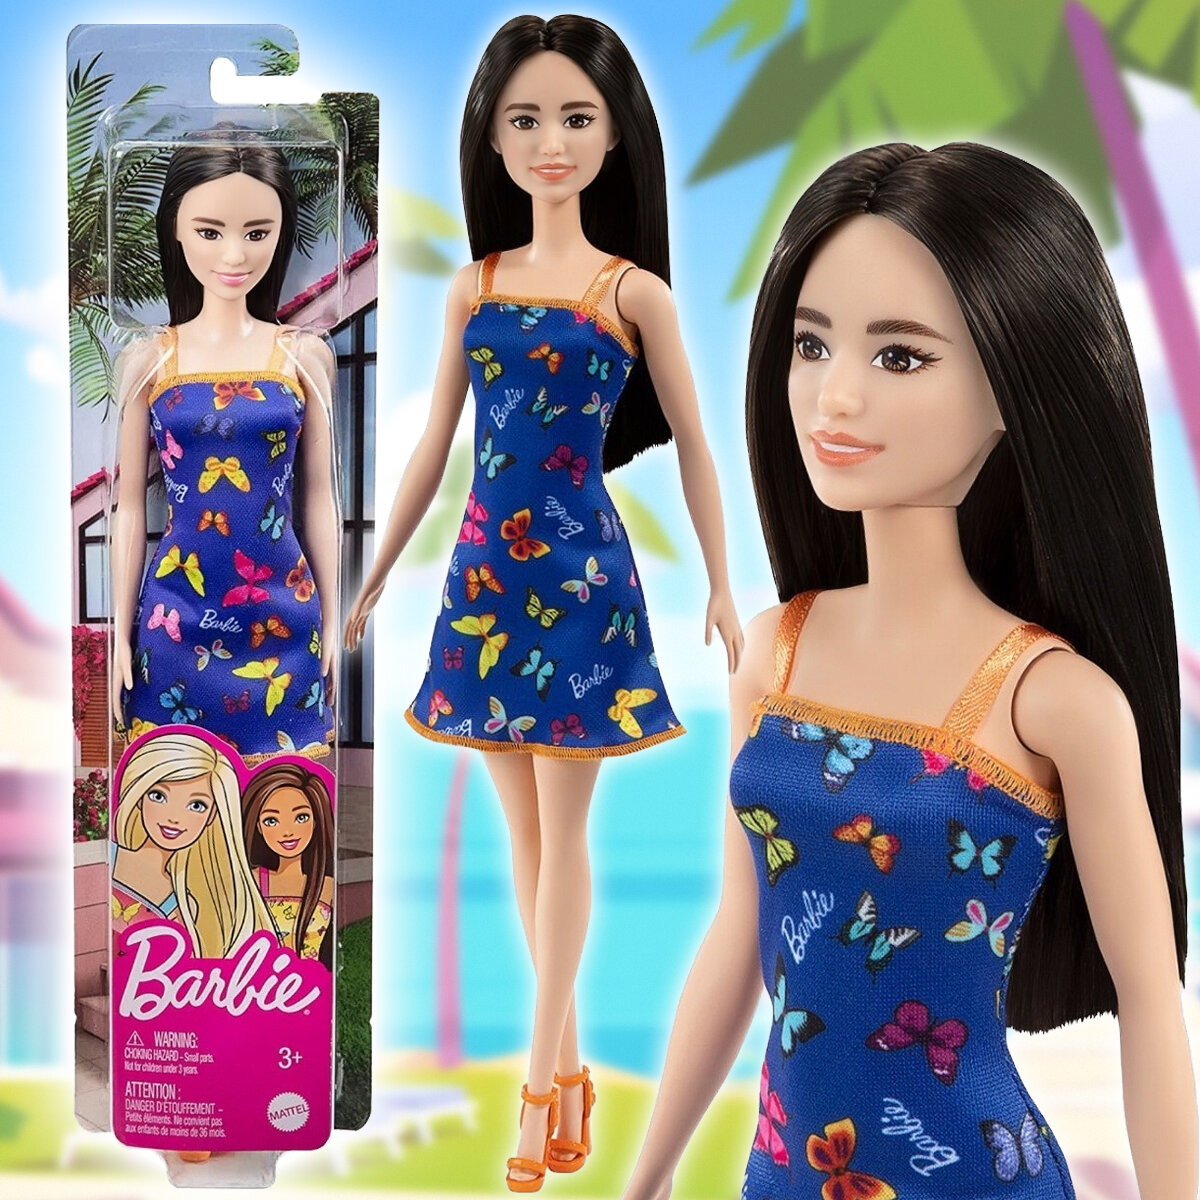 Кукла Барби серия "Супер стиль" Barbie Fashionistas в "синем платье с бабочками"